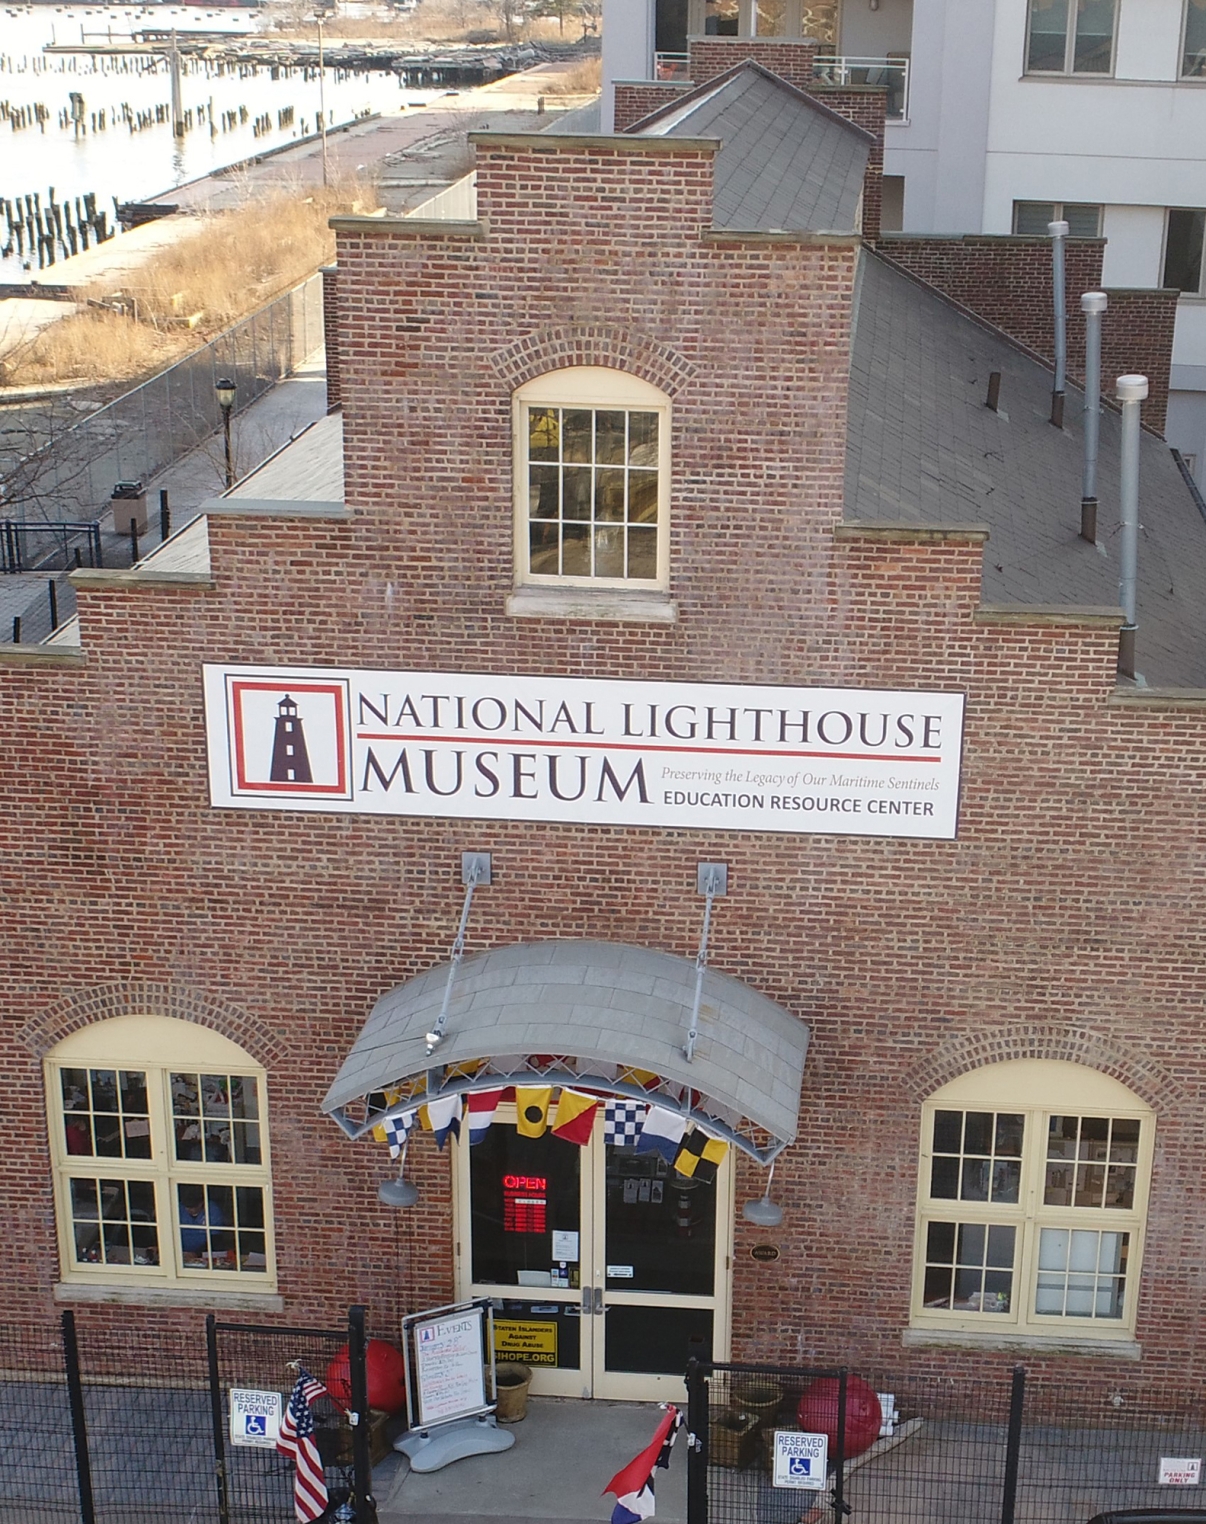 National Lighthouse Museum. Photo courtesy of National Lighthouse Museum.